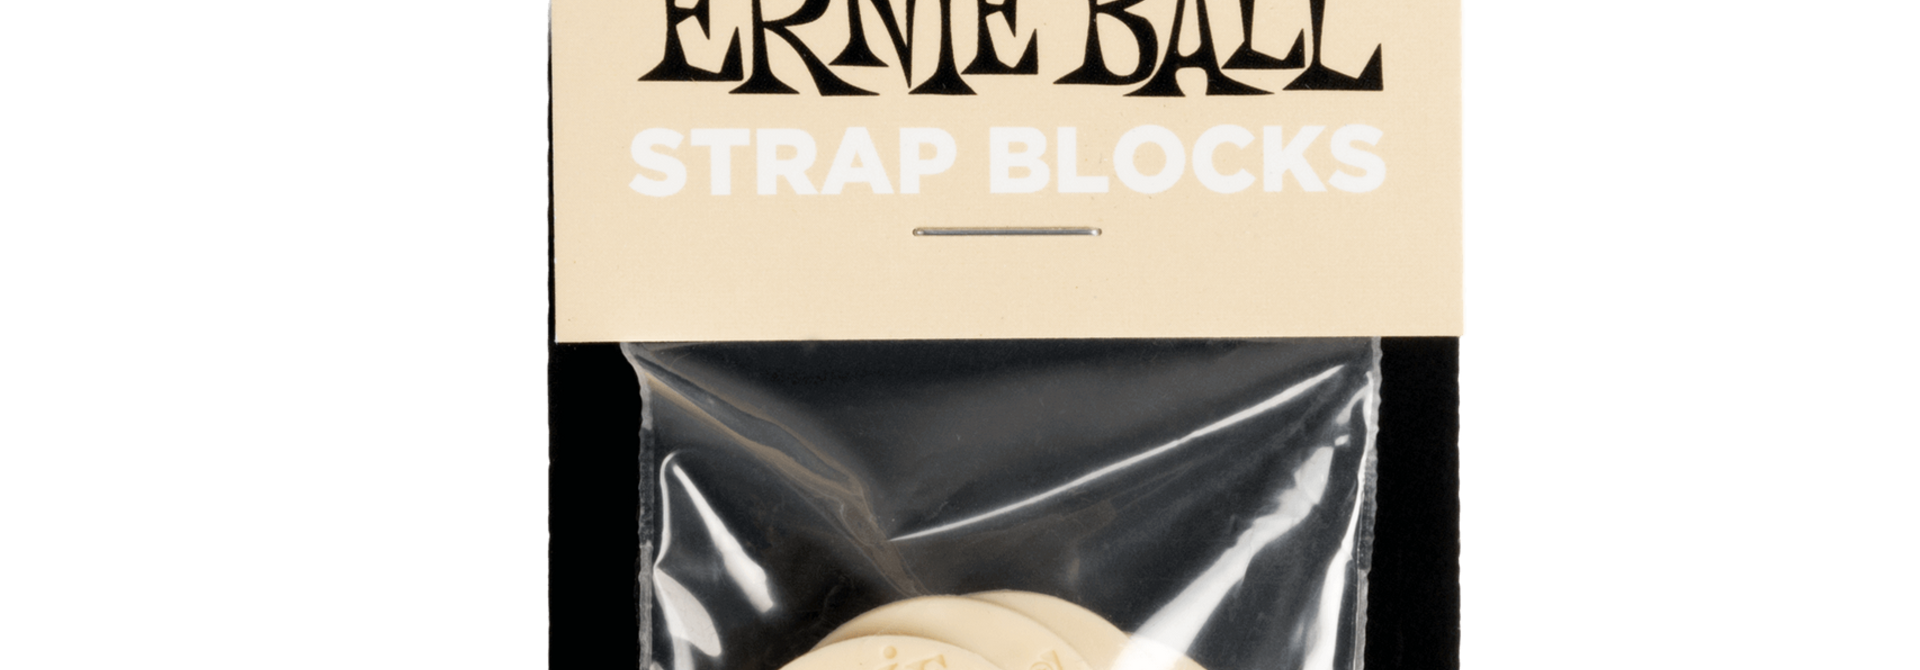 Ernie Ball Strap Blocks 4pk - Cream